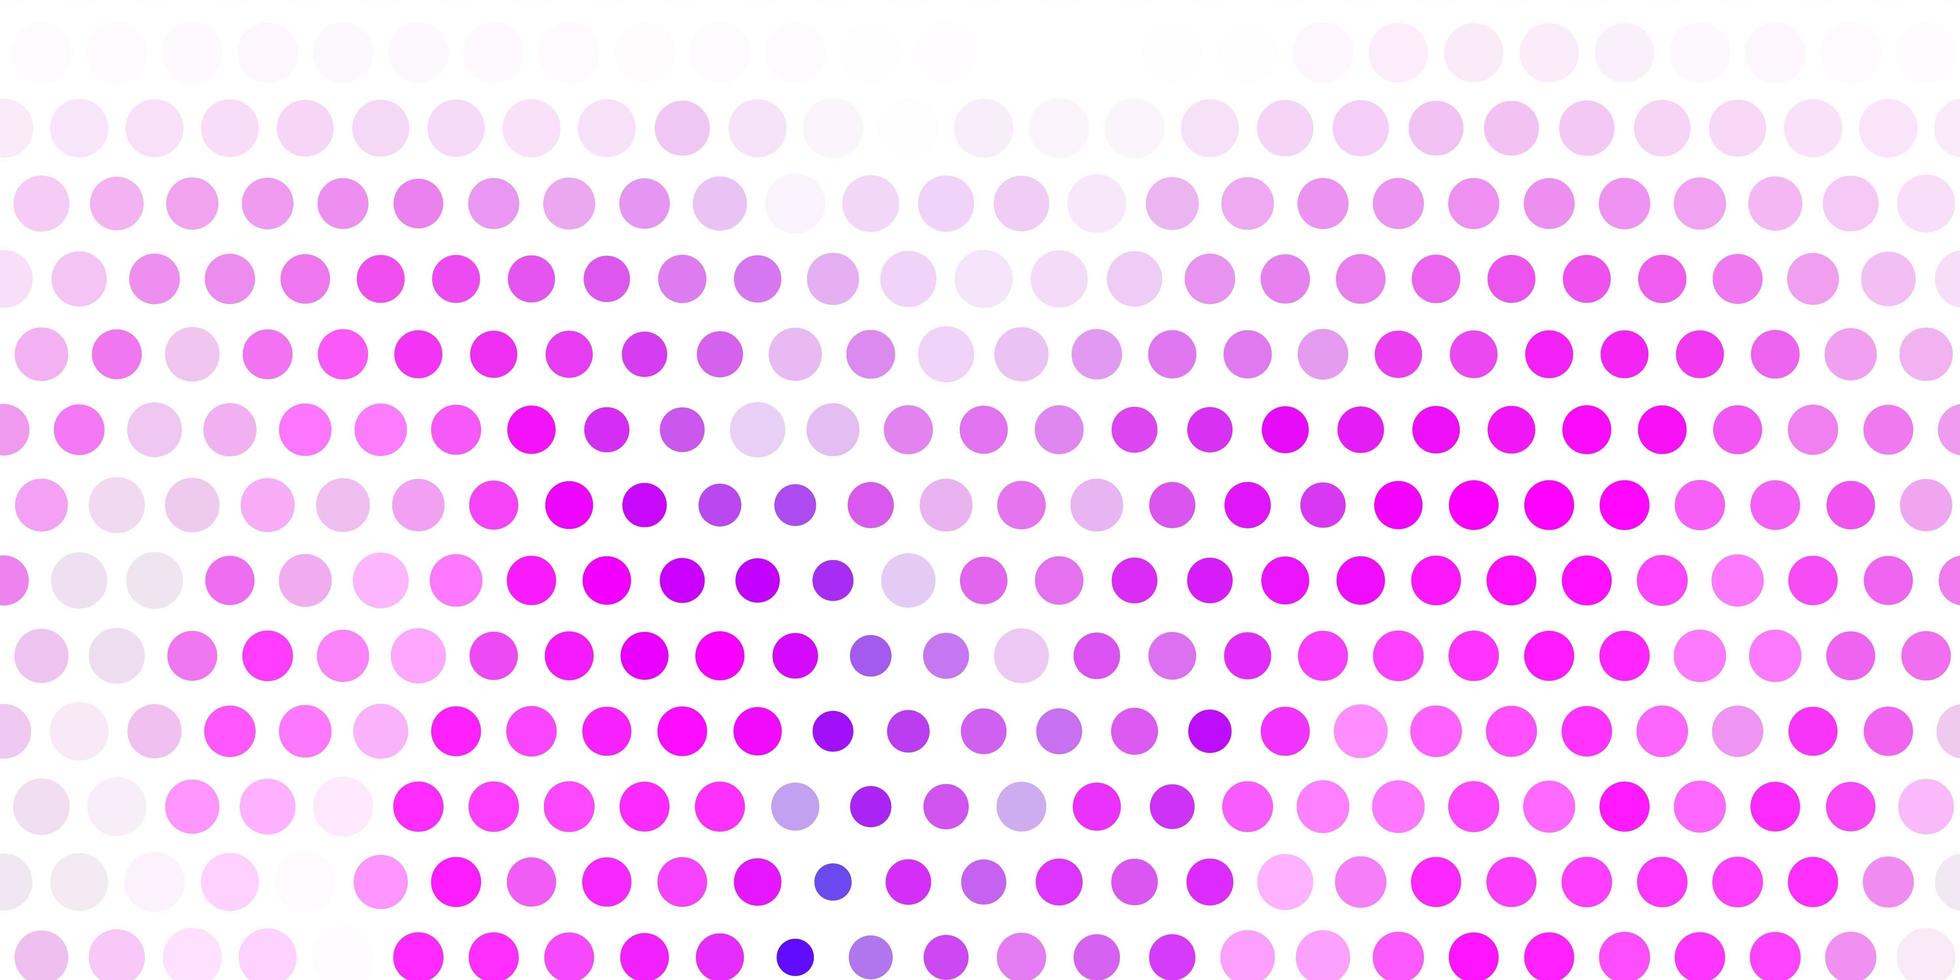 toile de fond de vecteur violet clair avec des points.